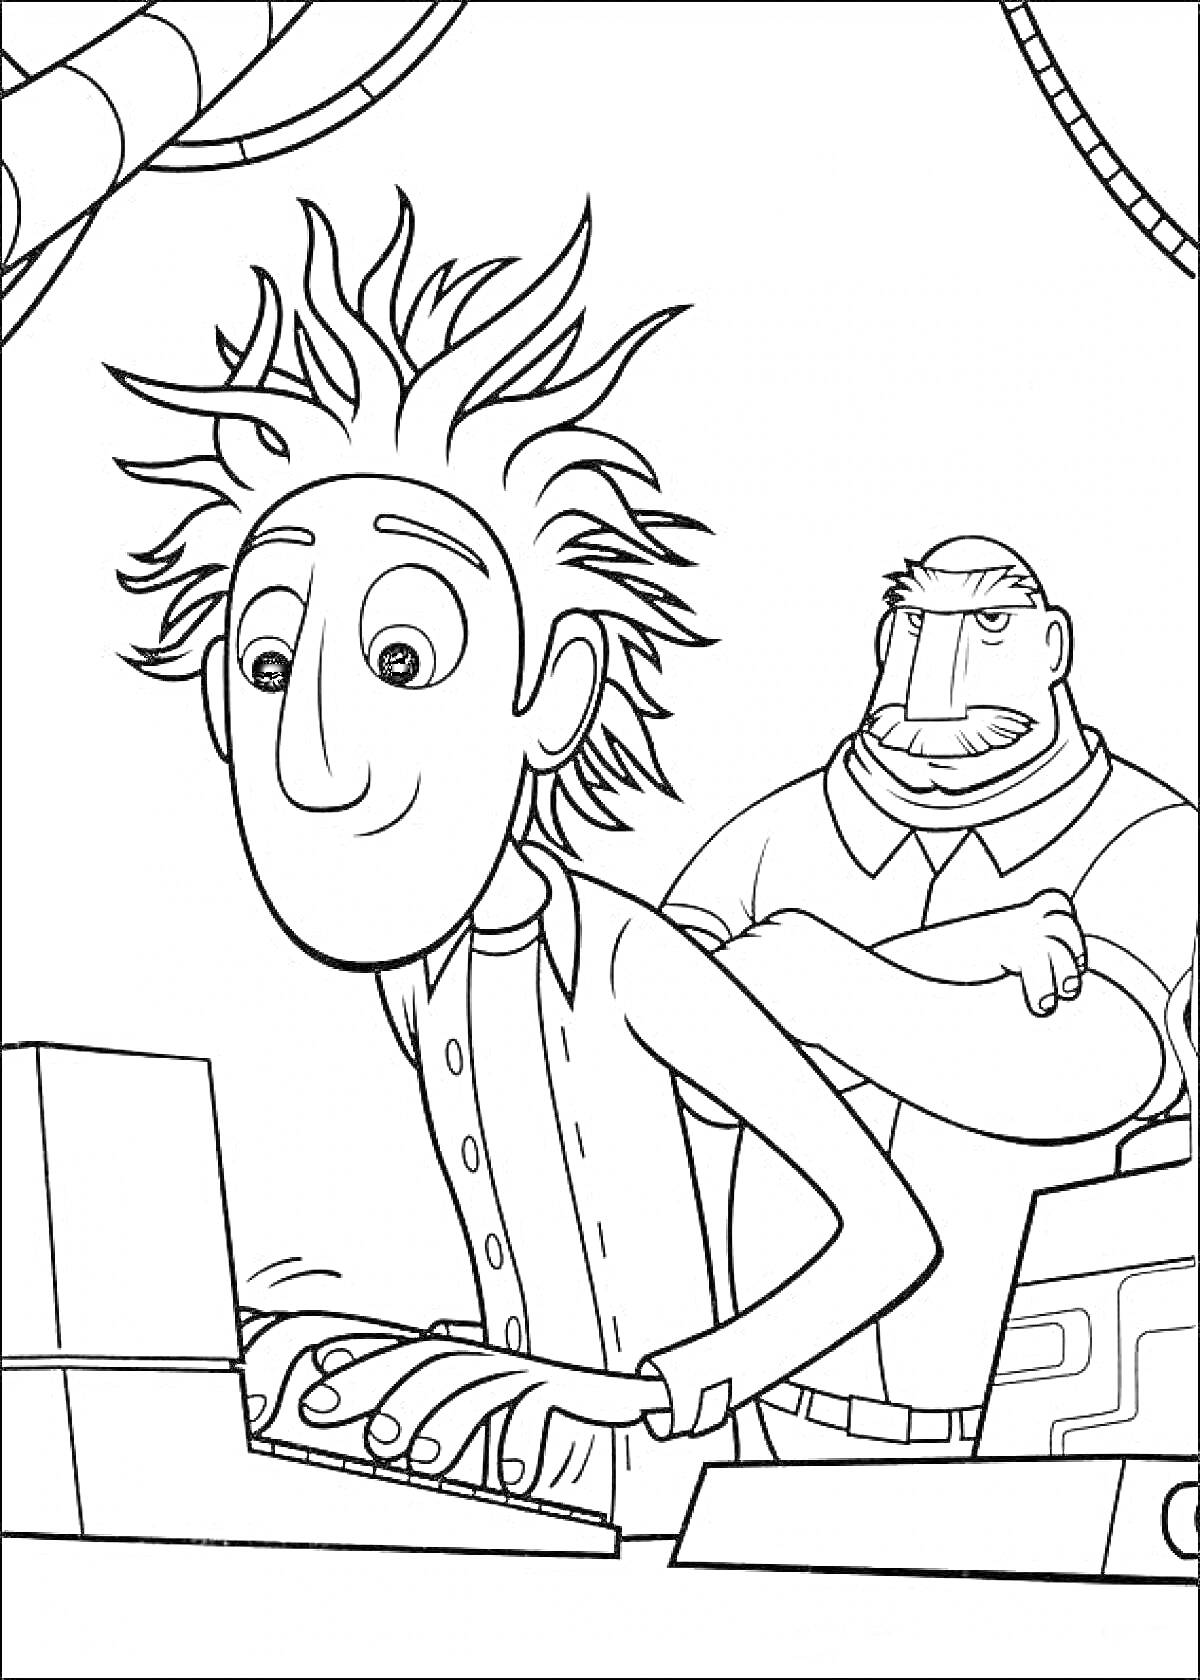 Раскраска Человек с растрёпанными волосами за компьютером и мужчина с усами на заднем фоне